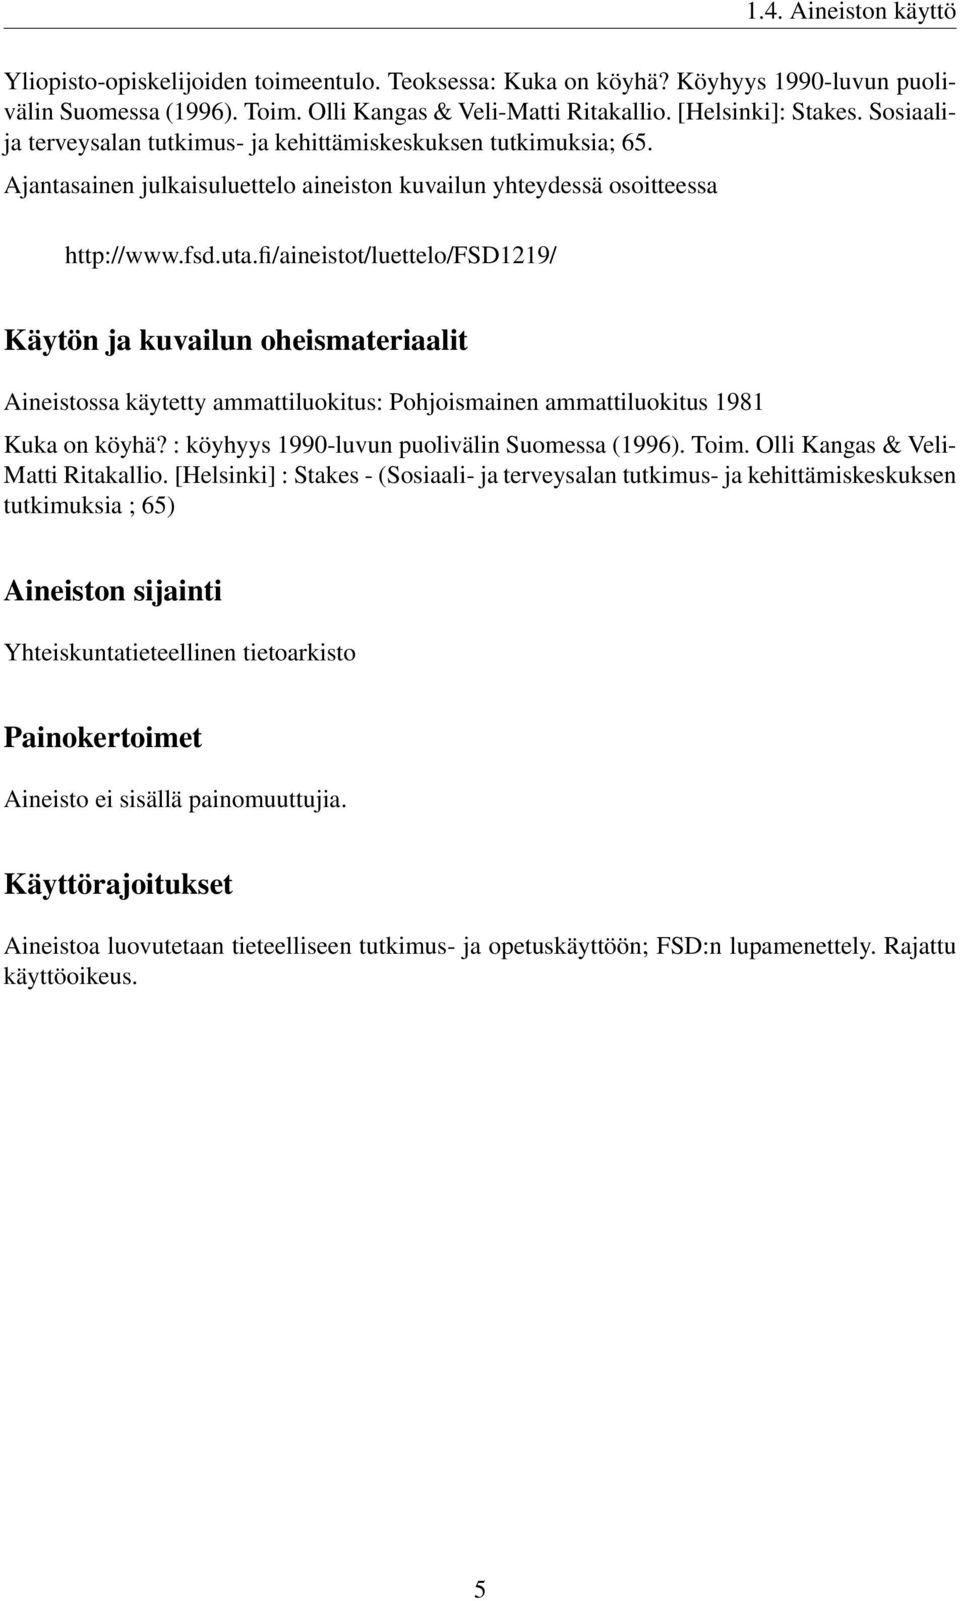 fi/aineistot/luettelo/fsd1219/ Käytön ja kuvailun oheismateriaalit Aineistossa käytetty ammattiluokitus: Pohjoismainen ammattiluokitus 1981 Kuka on köyhä?